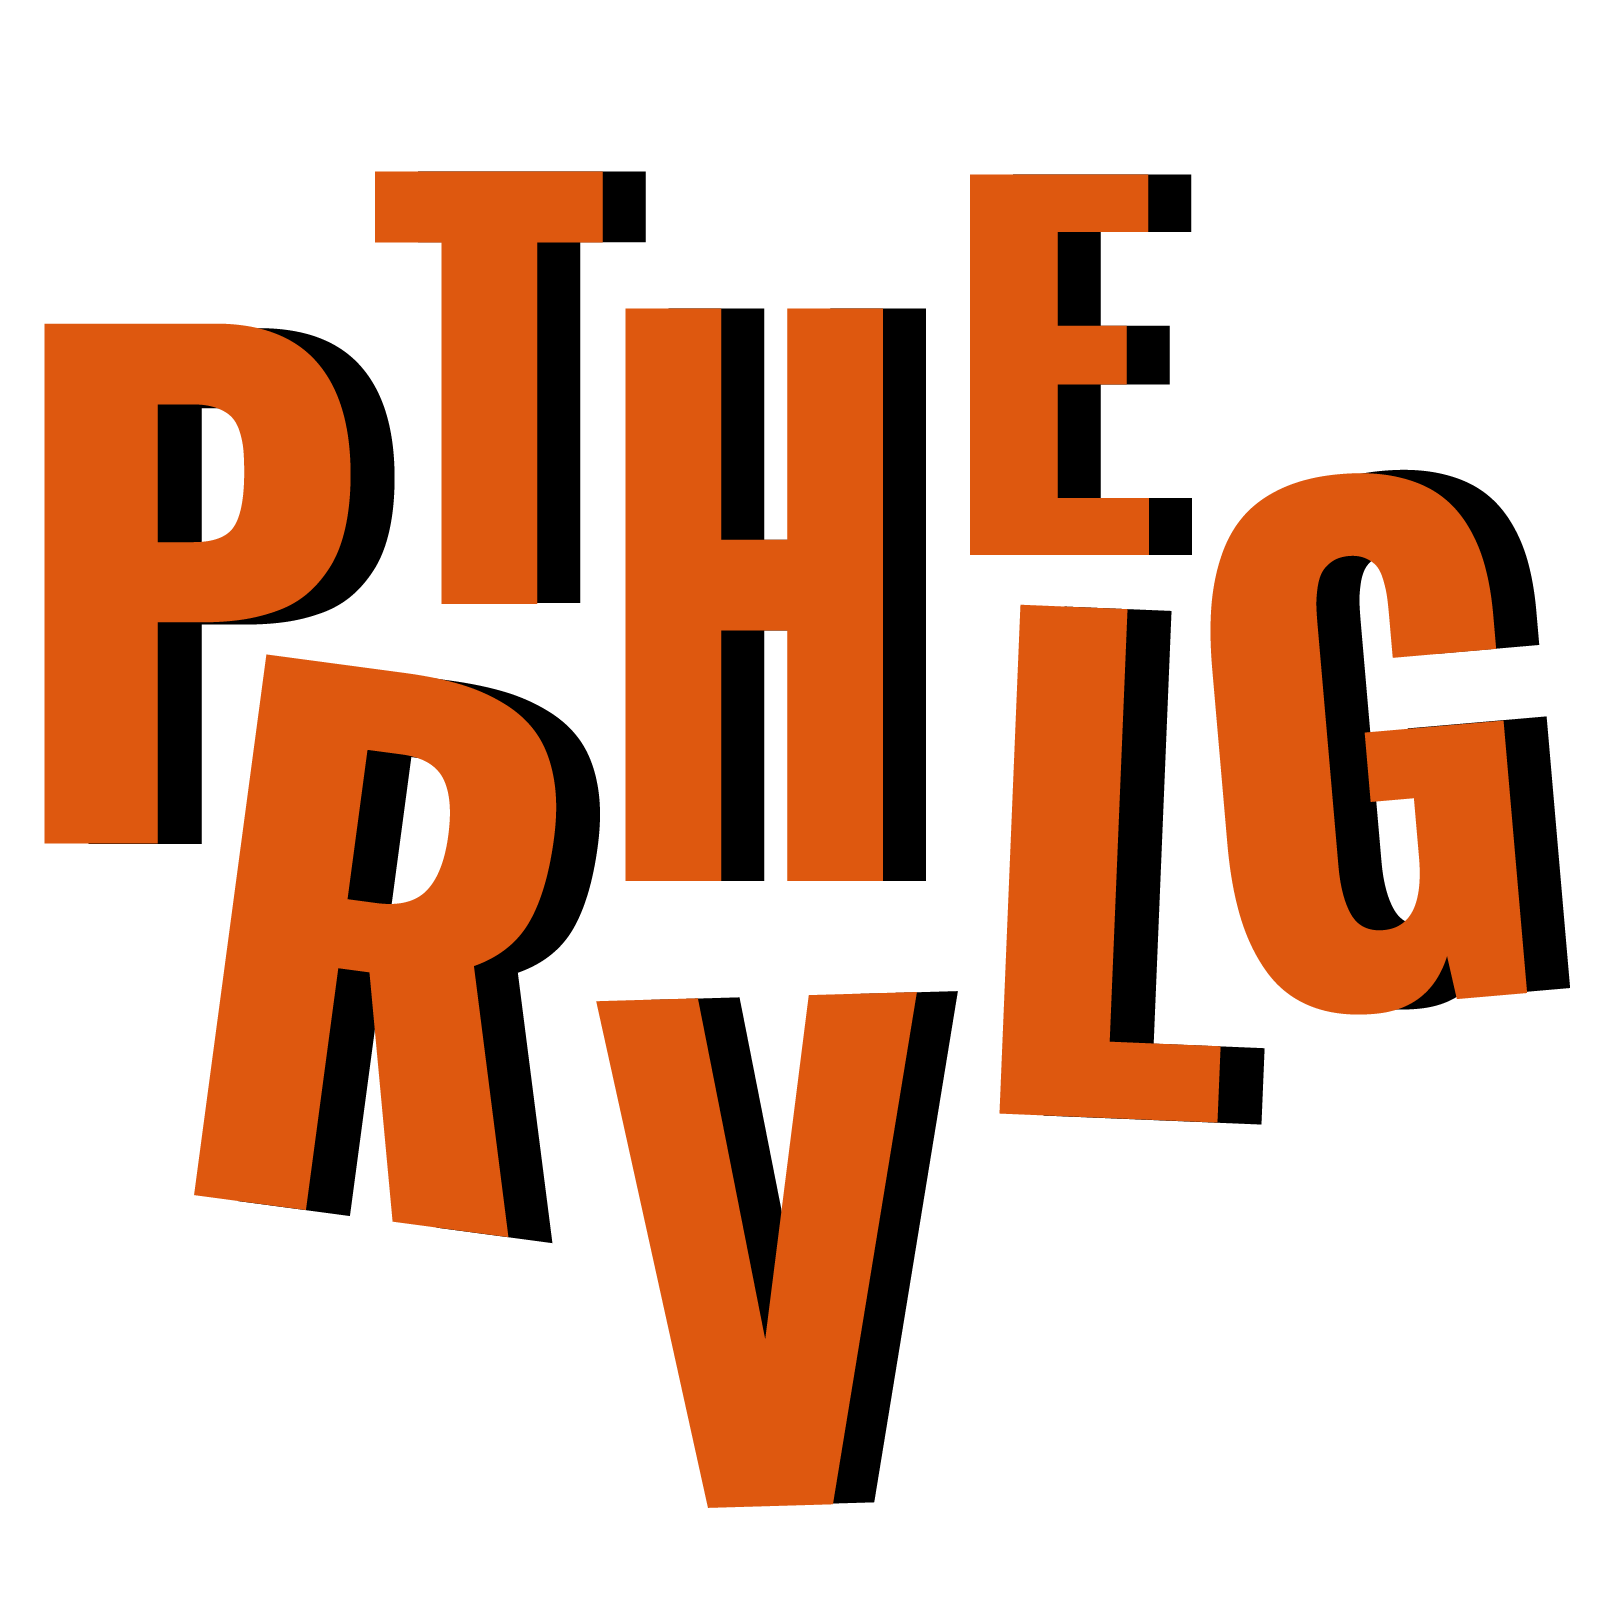 The PRVLG